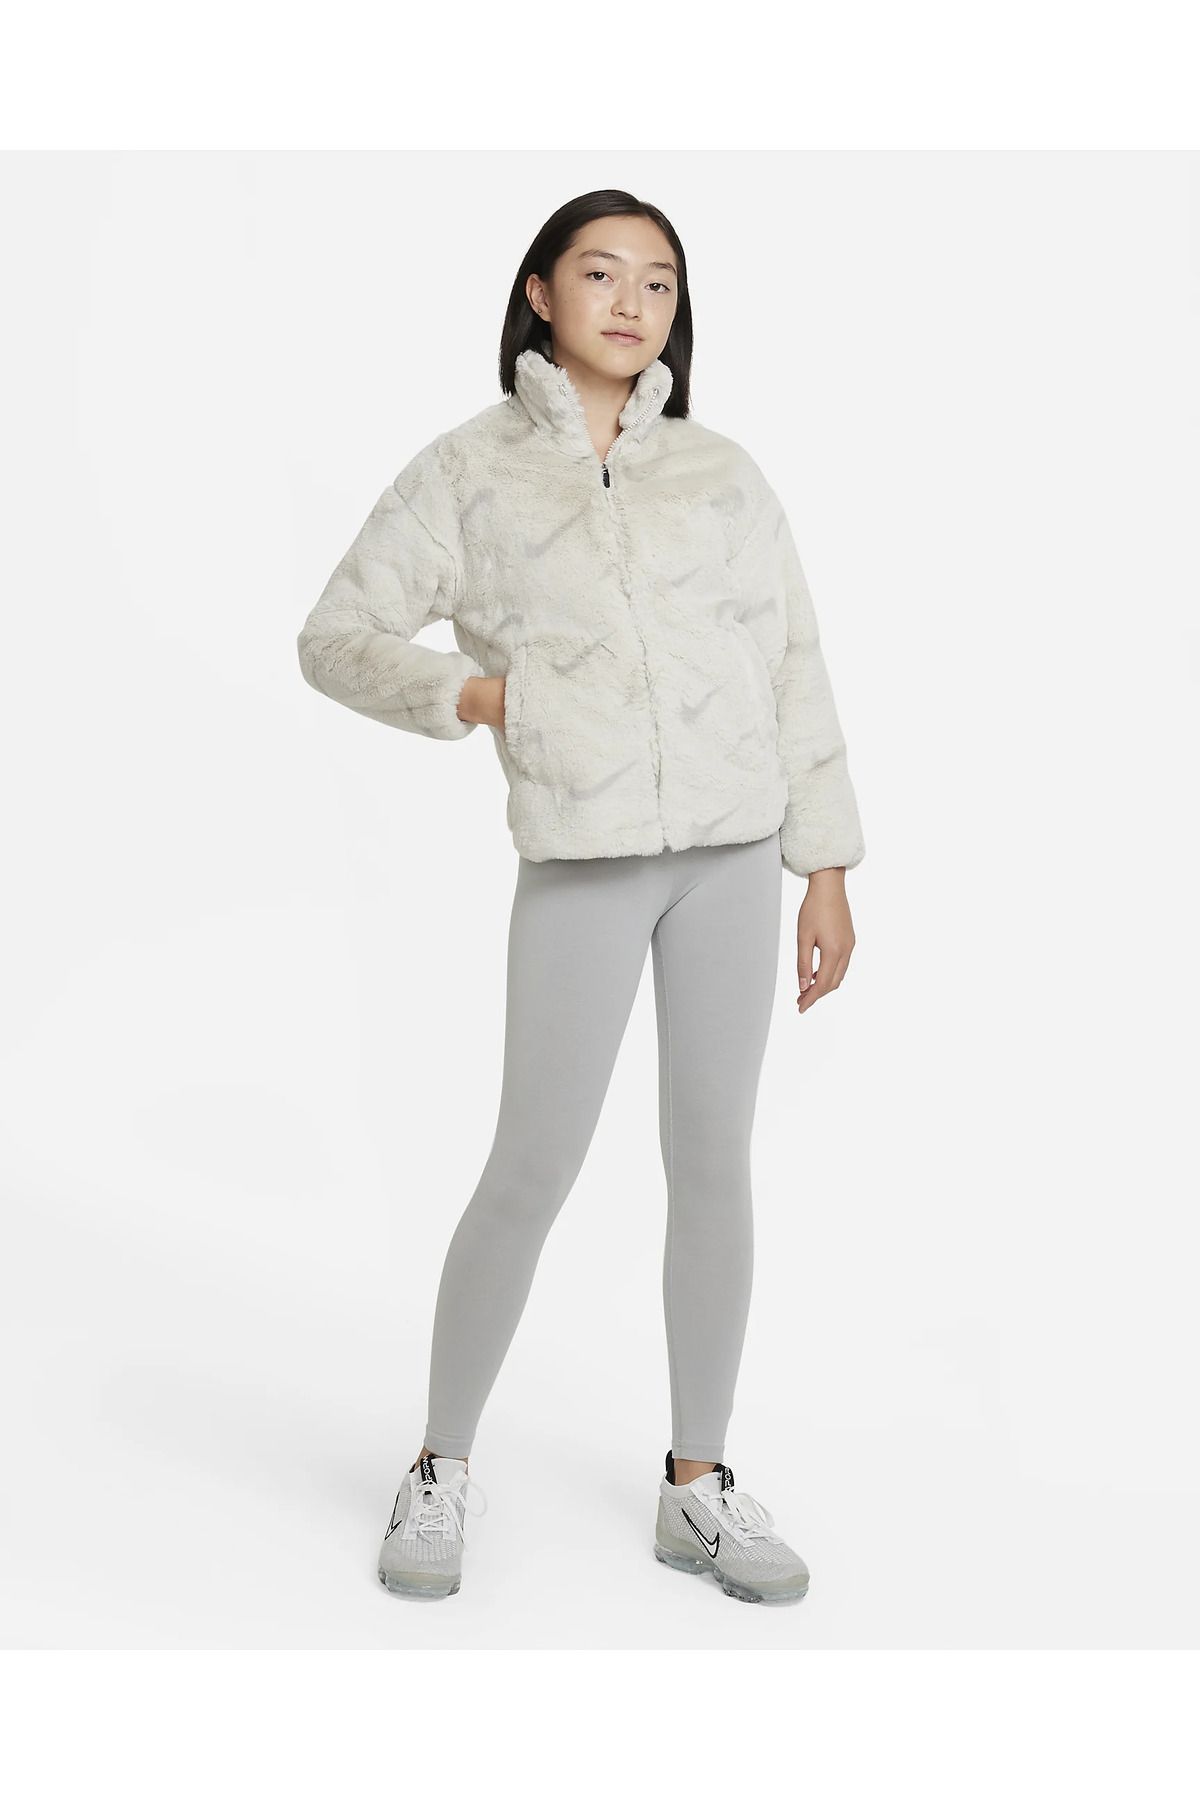 Nike Sportswear Big Kids' Faux Fur Jacket